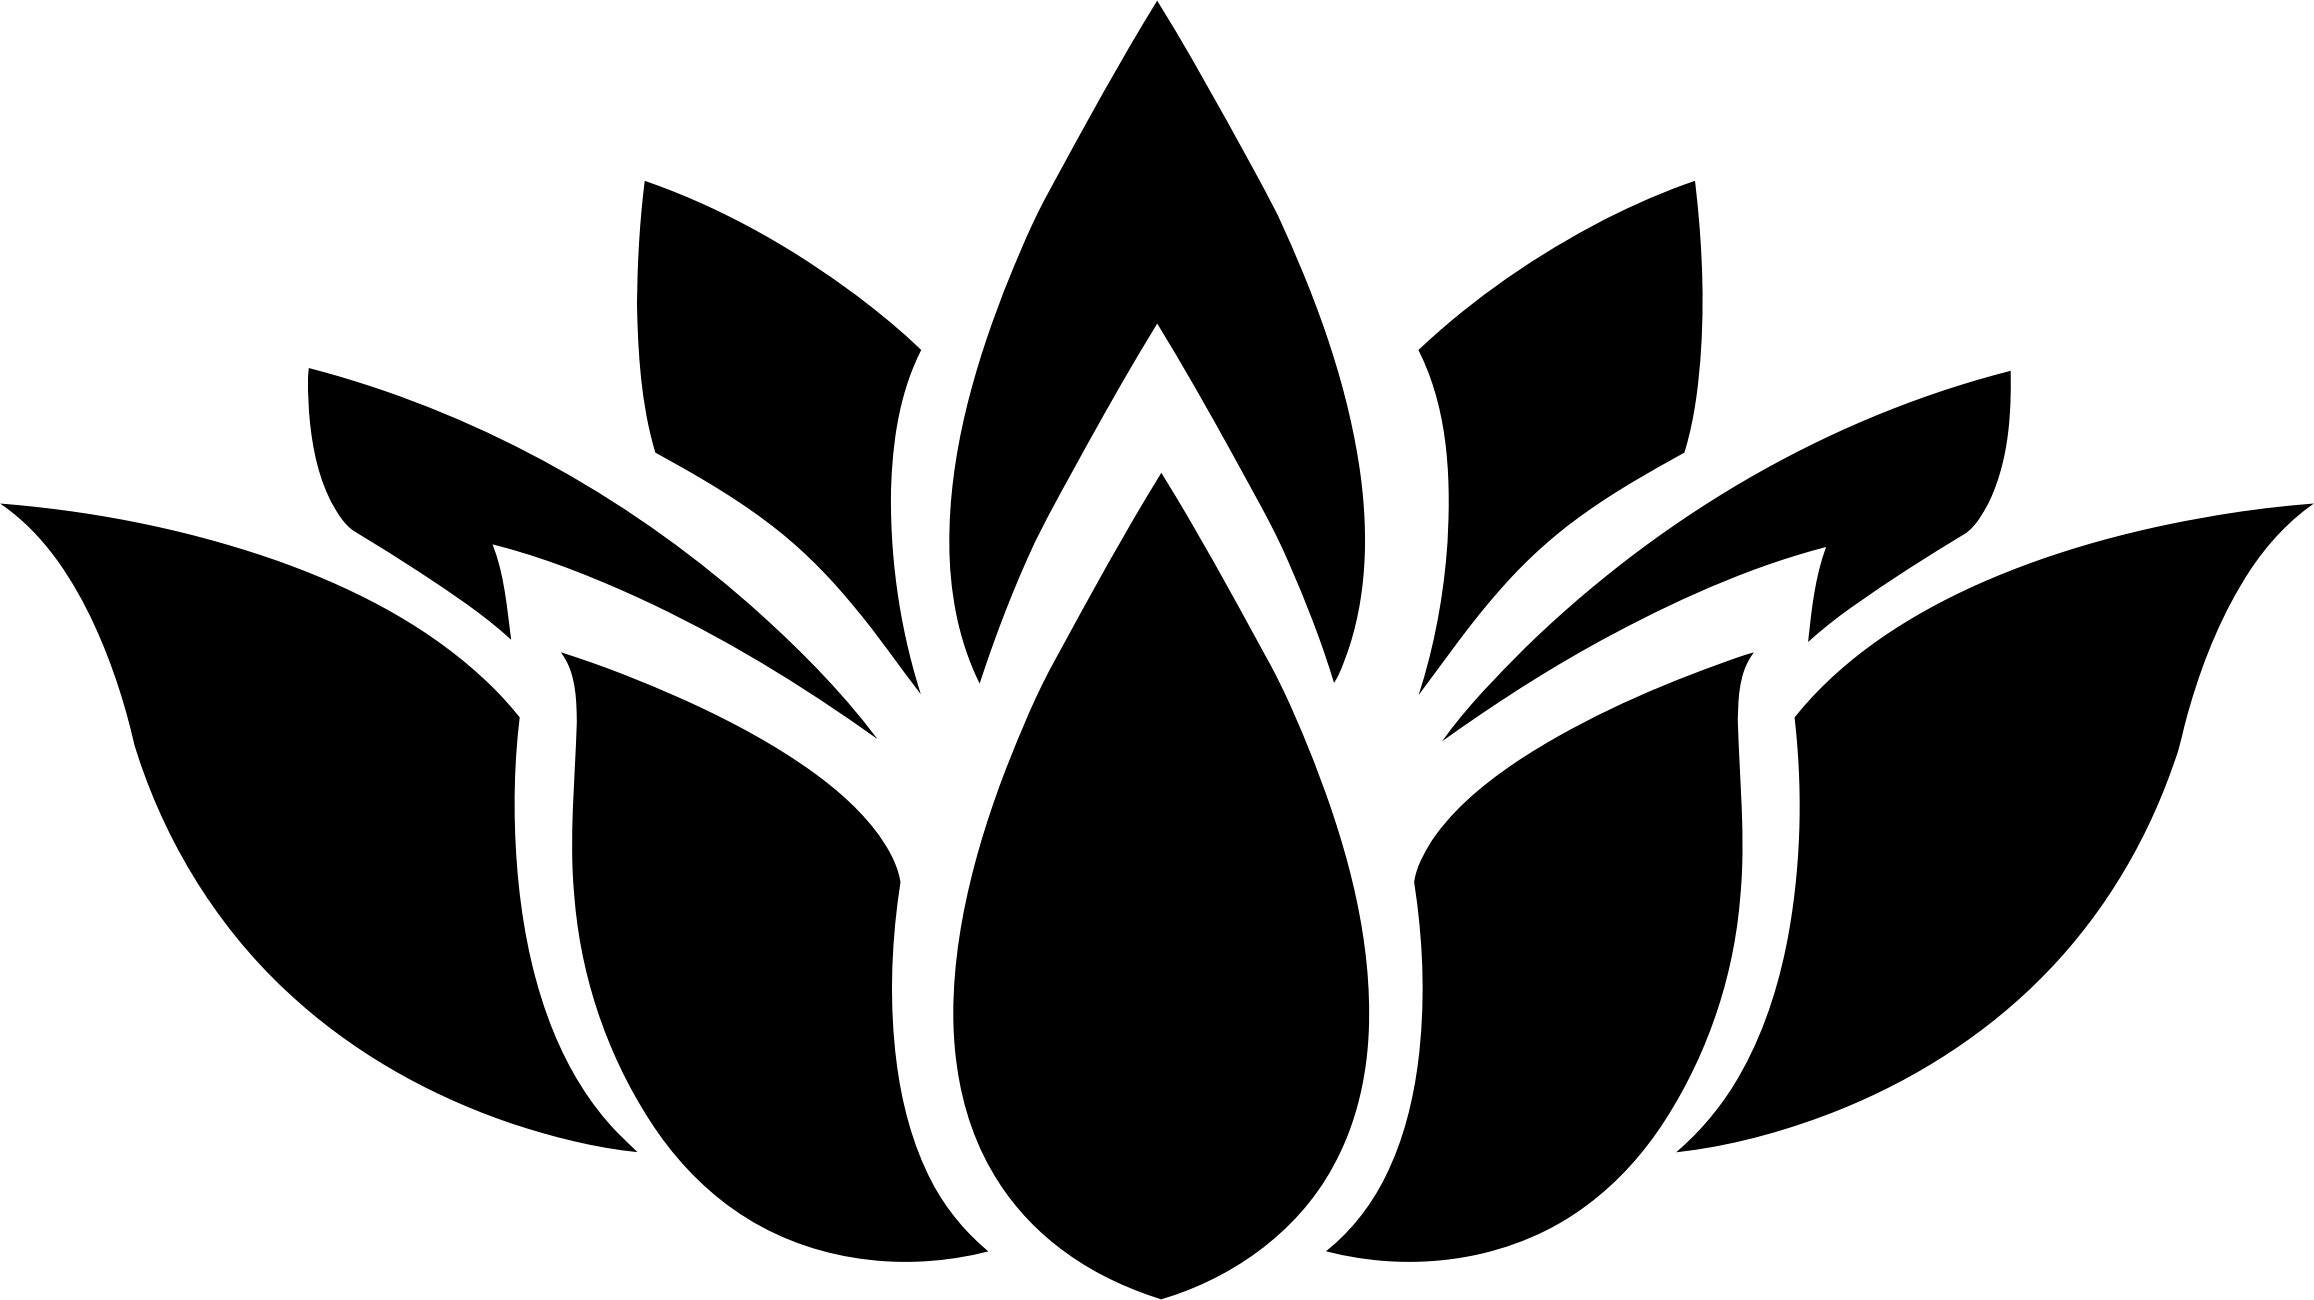 3 Flower Logo - Lotus flower logo png 3 » PNG Image